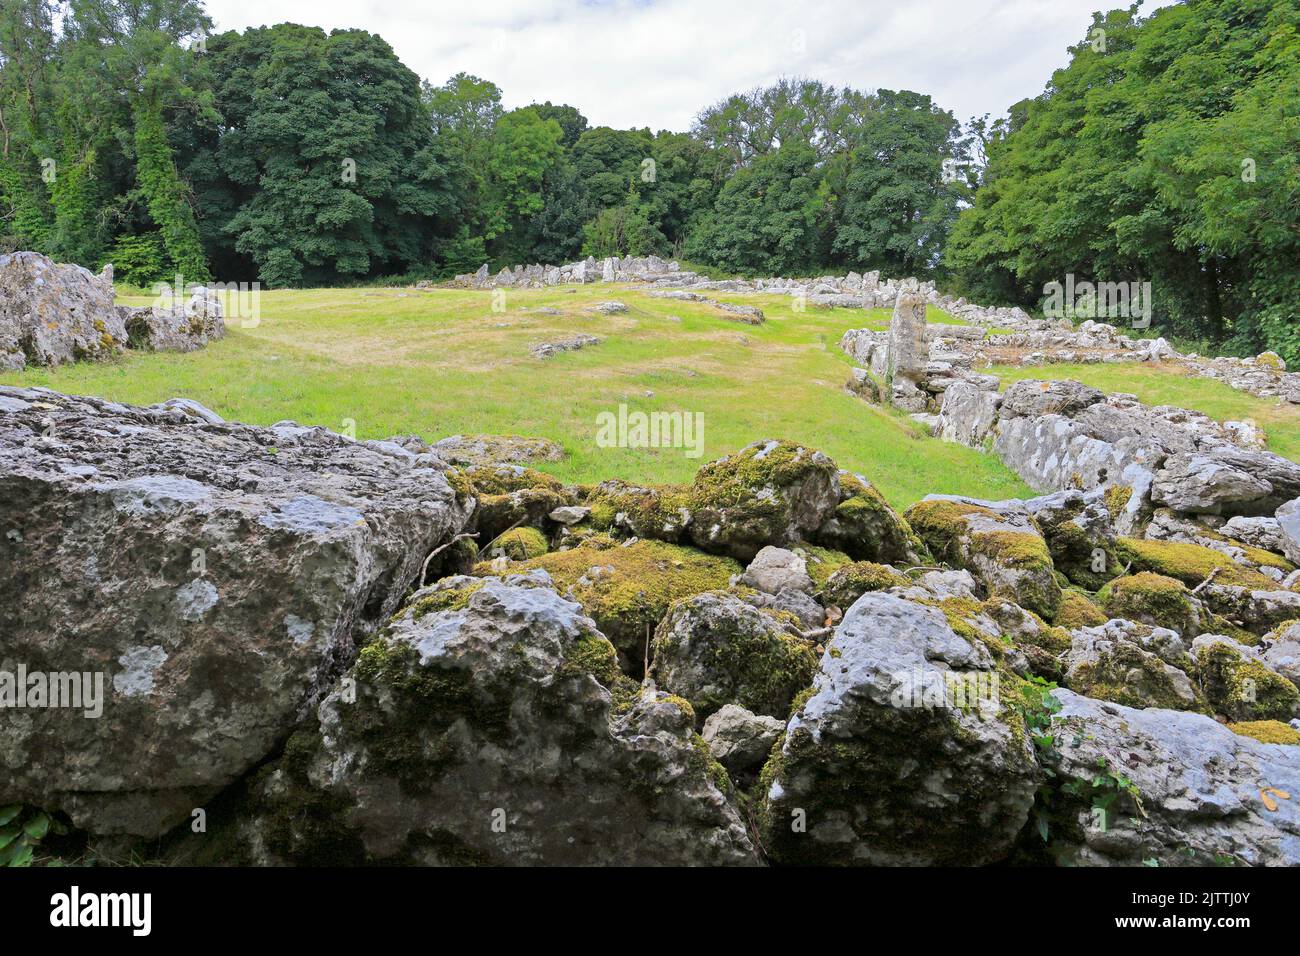 DIN Lligwy ancienne colonie en pierre ruinée près de Moelfre, île d'Anglesey, Ynys mon, pays de Galles du Nord, Royaume-Uni. Banque D'Images